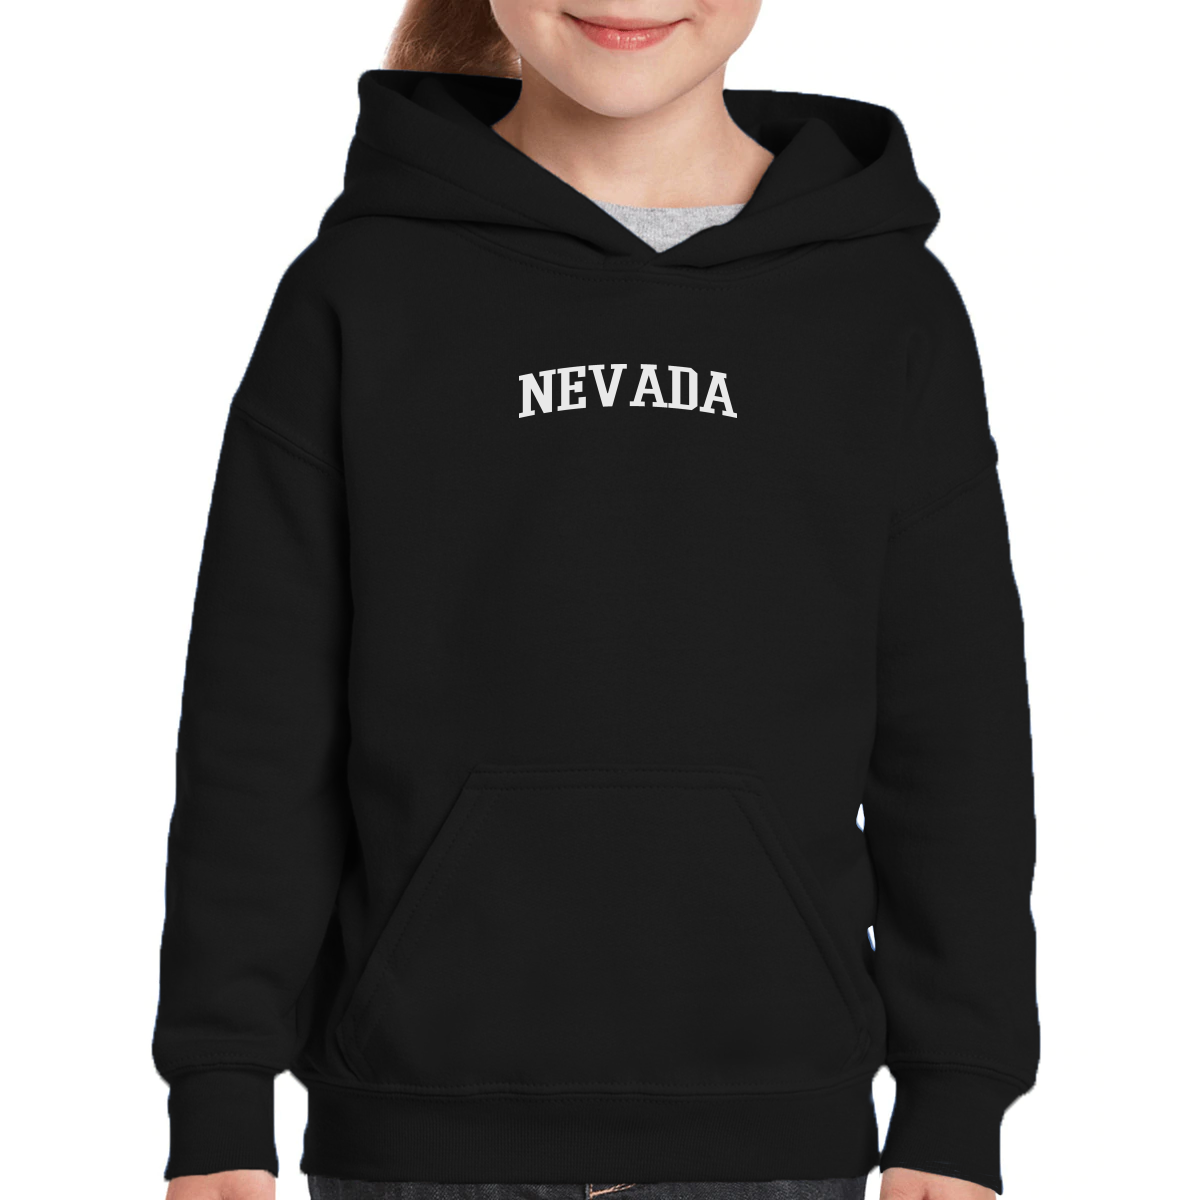 Nevada Kids Hoodie | Black